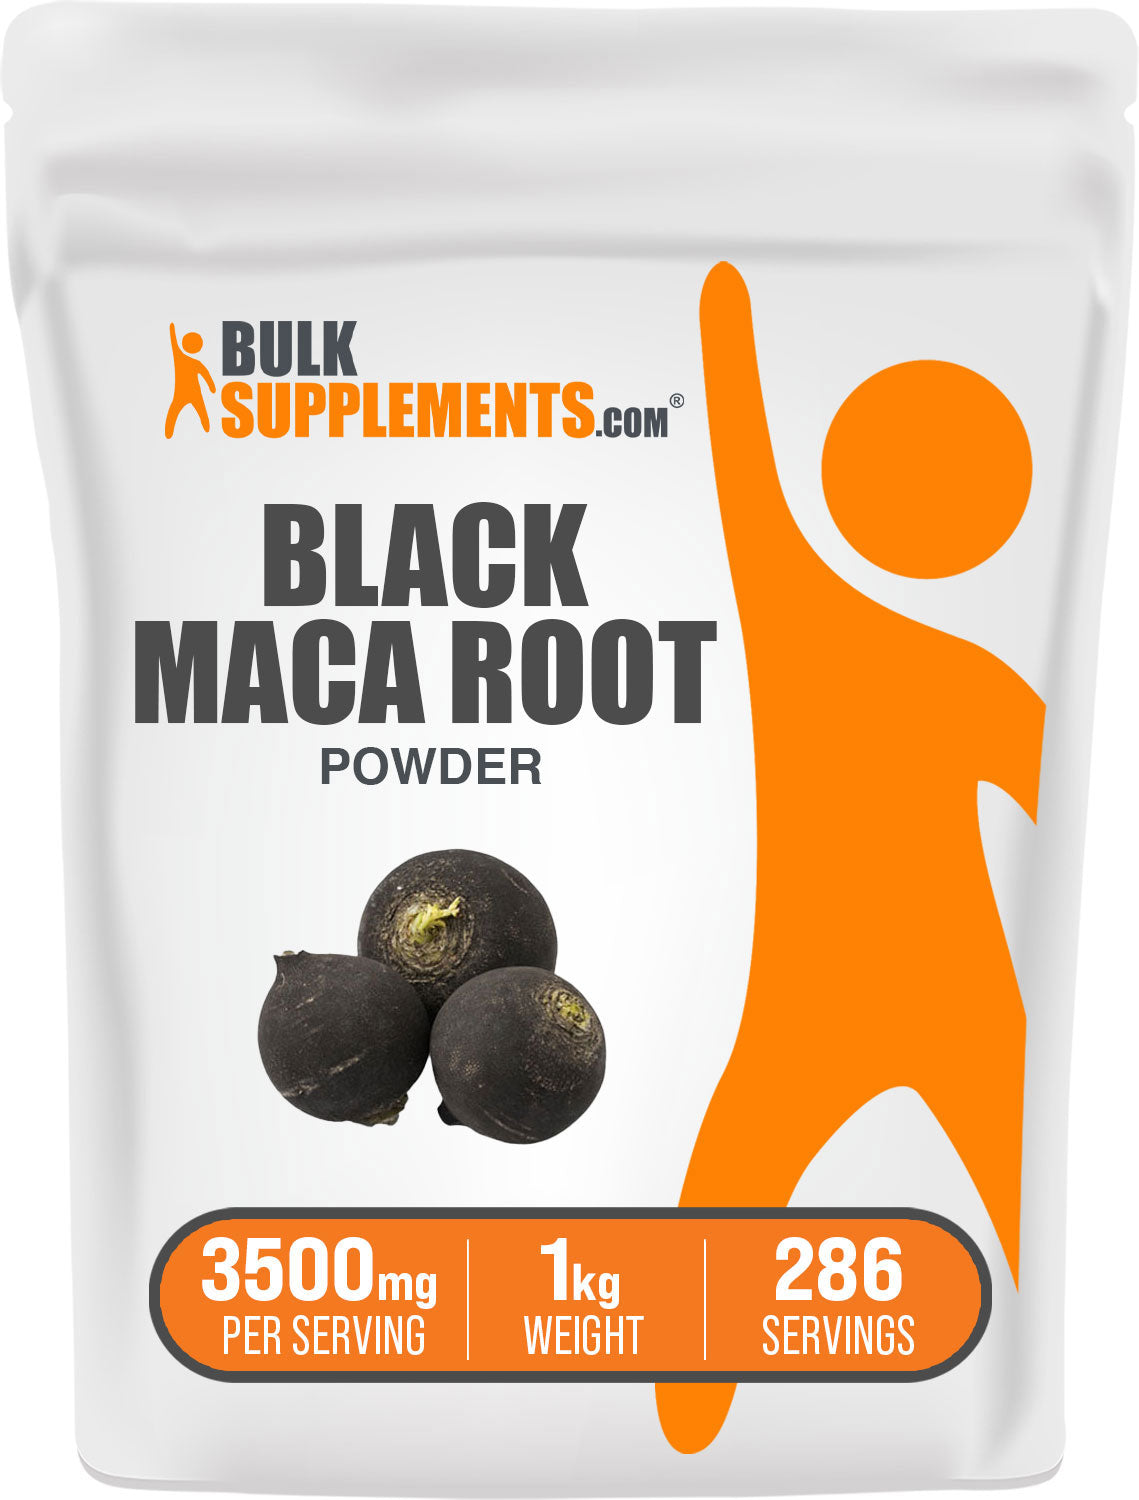 Black Maca Powder 1kg